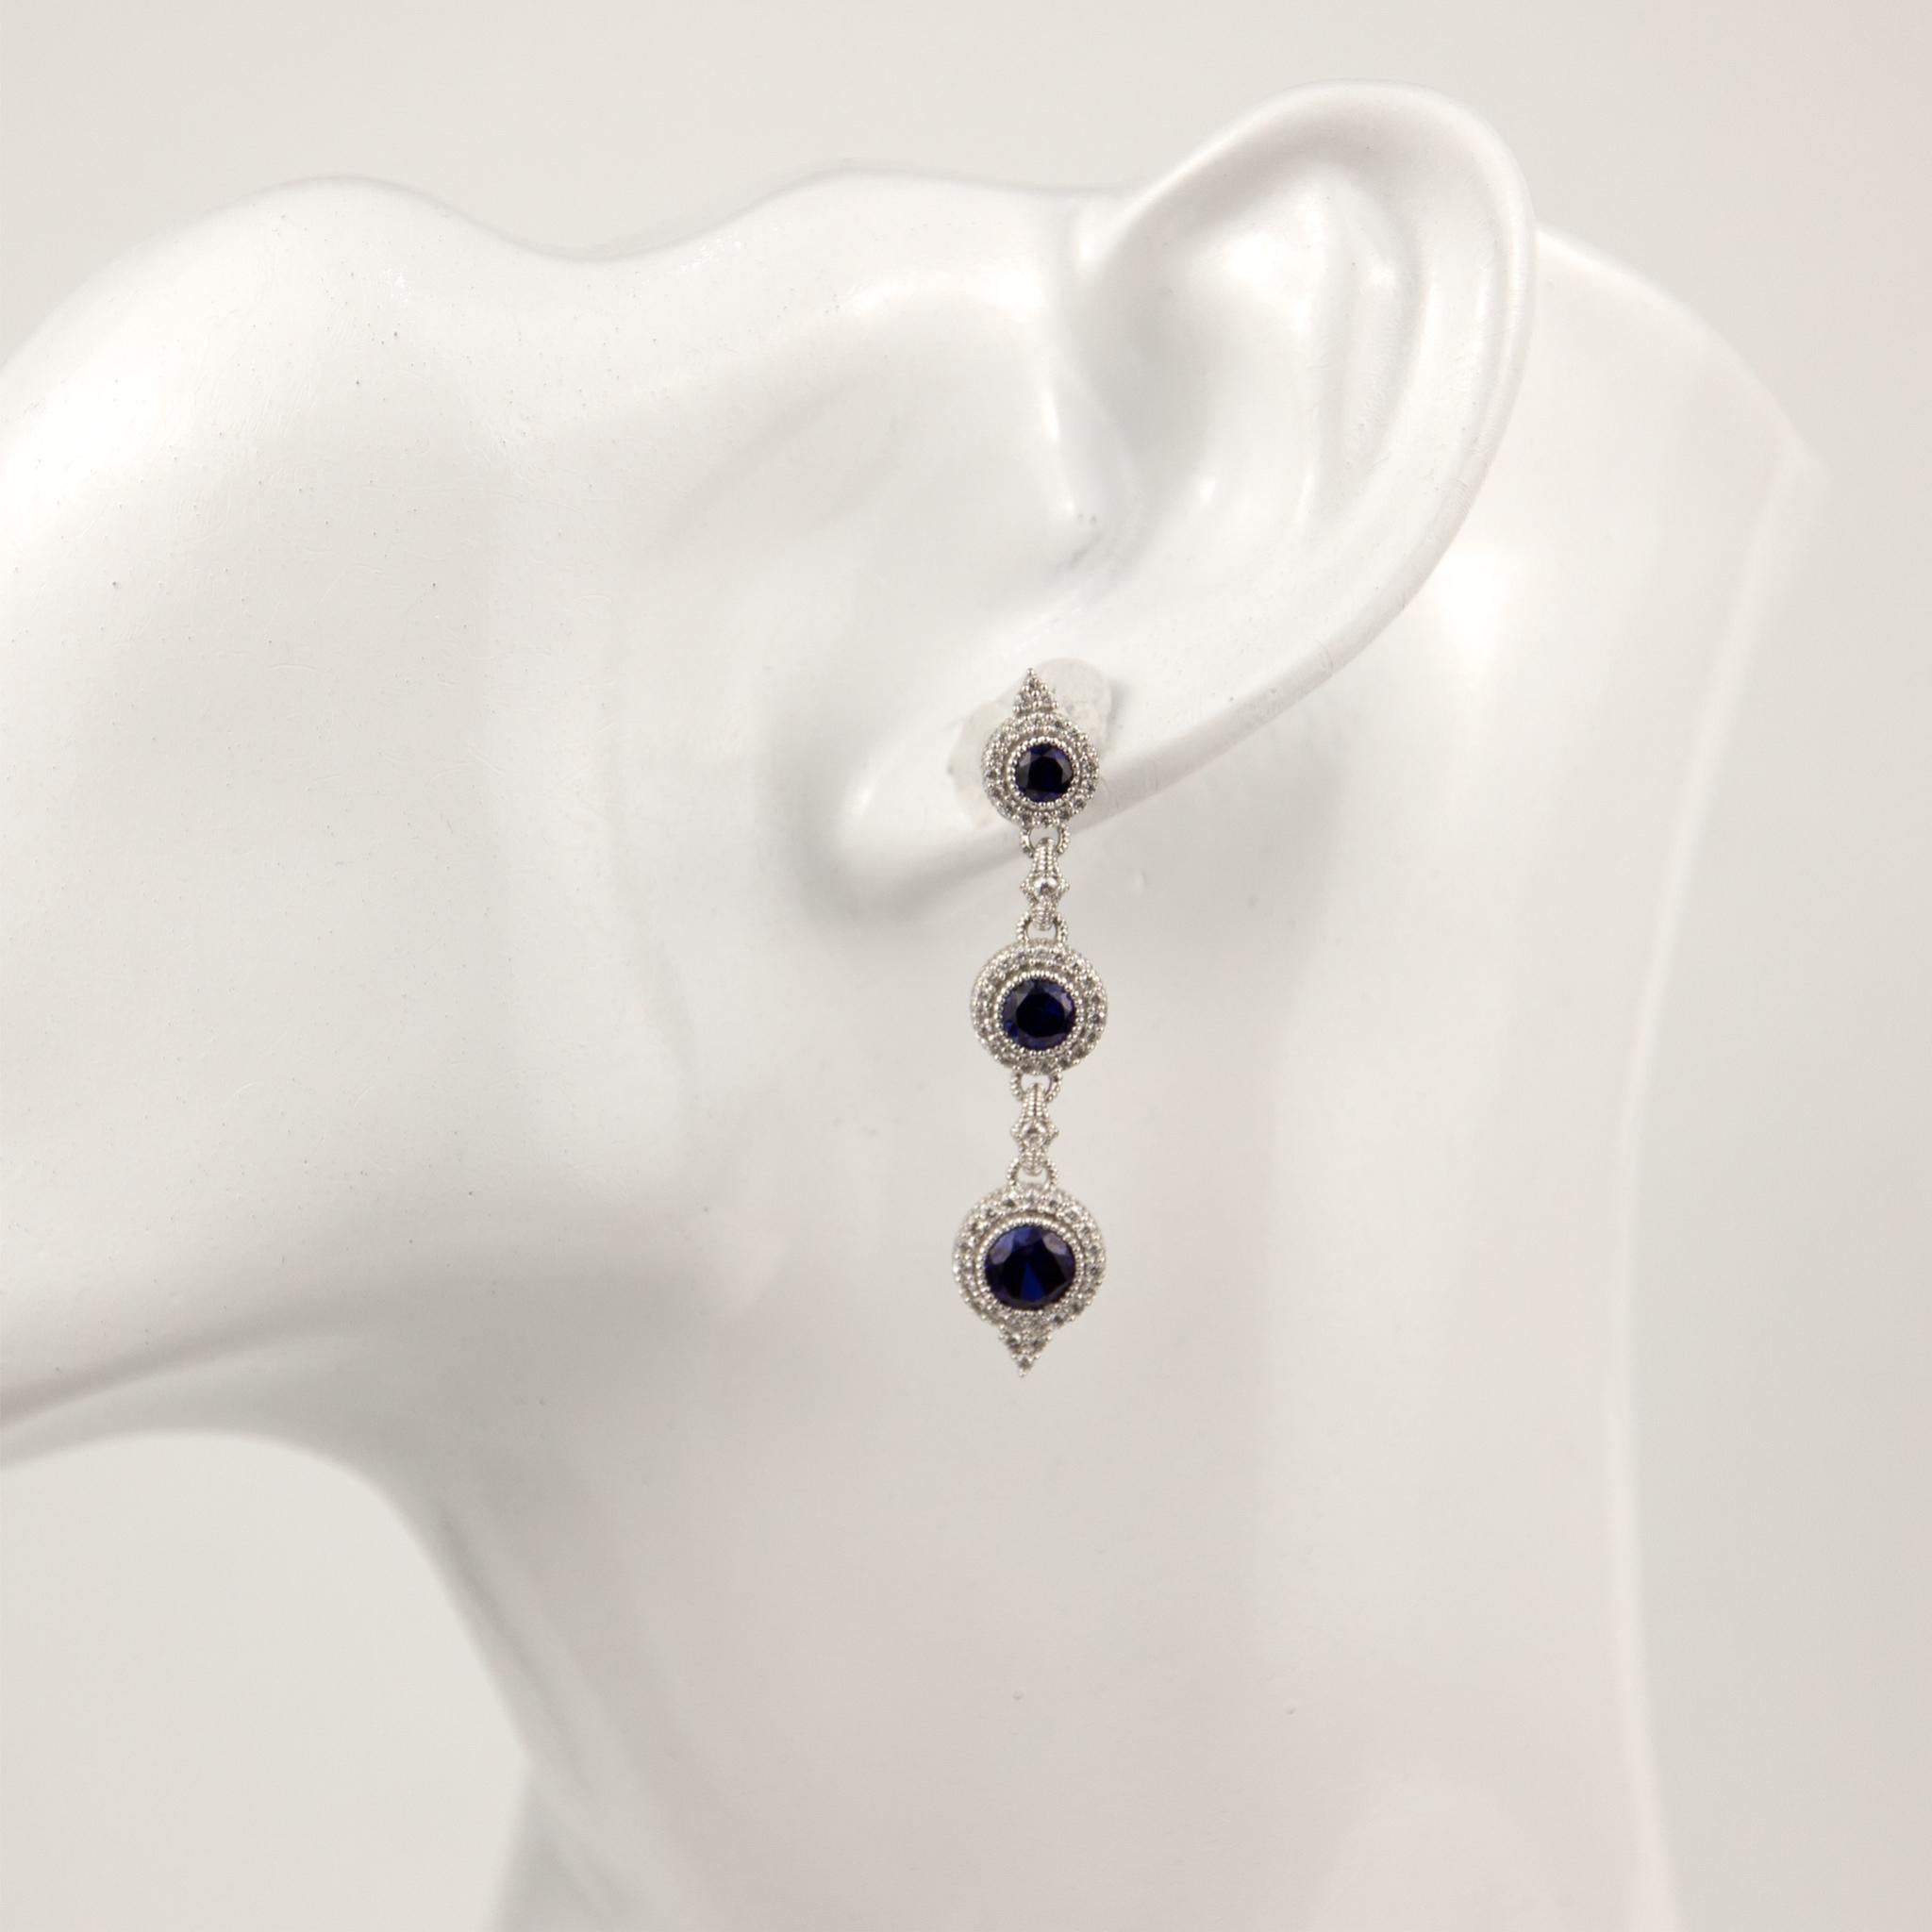 Brilliant Cut Judith Ripka 18k White Gold Diamond&Quartz&Sapphire Earrings For Sale